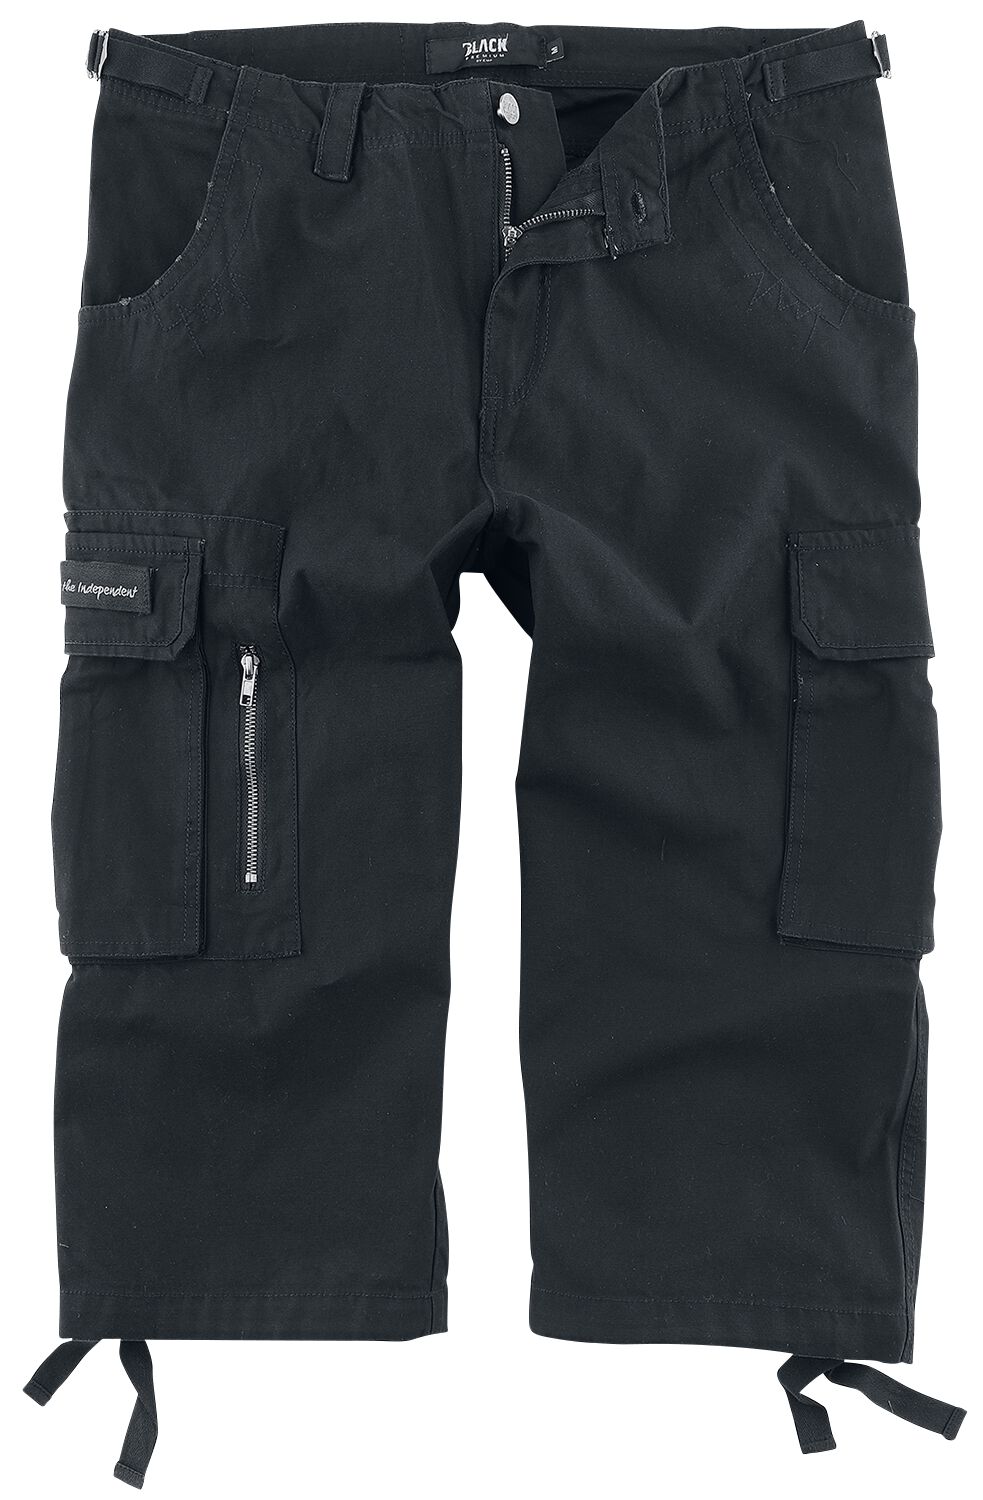 Black Premium by EMP 3/4 Army Vintage Shorts Short schwarz in XL